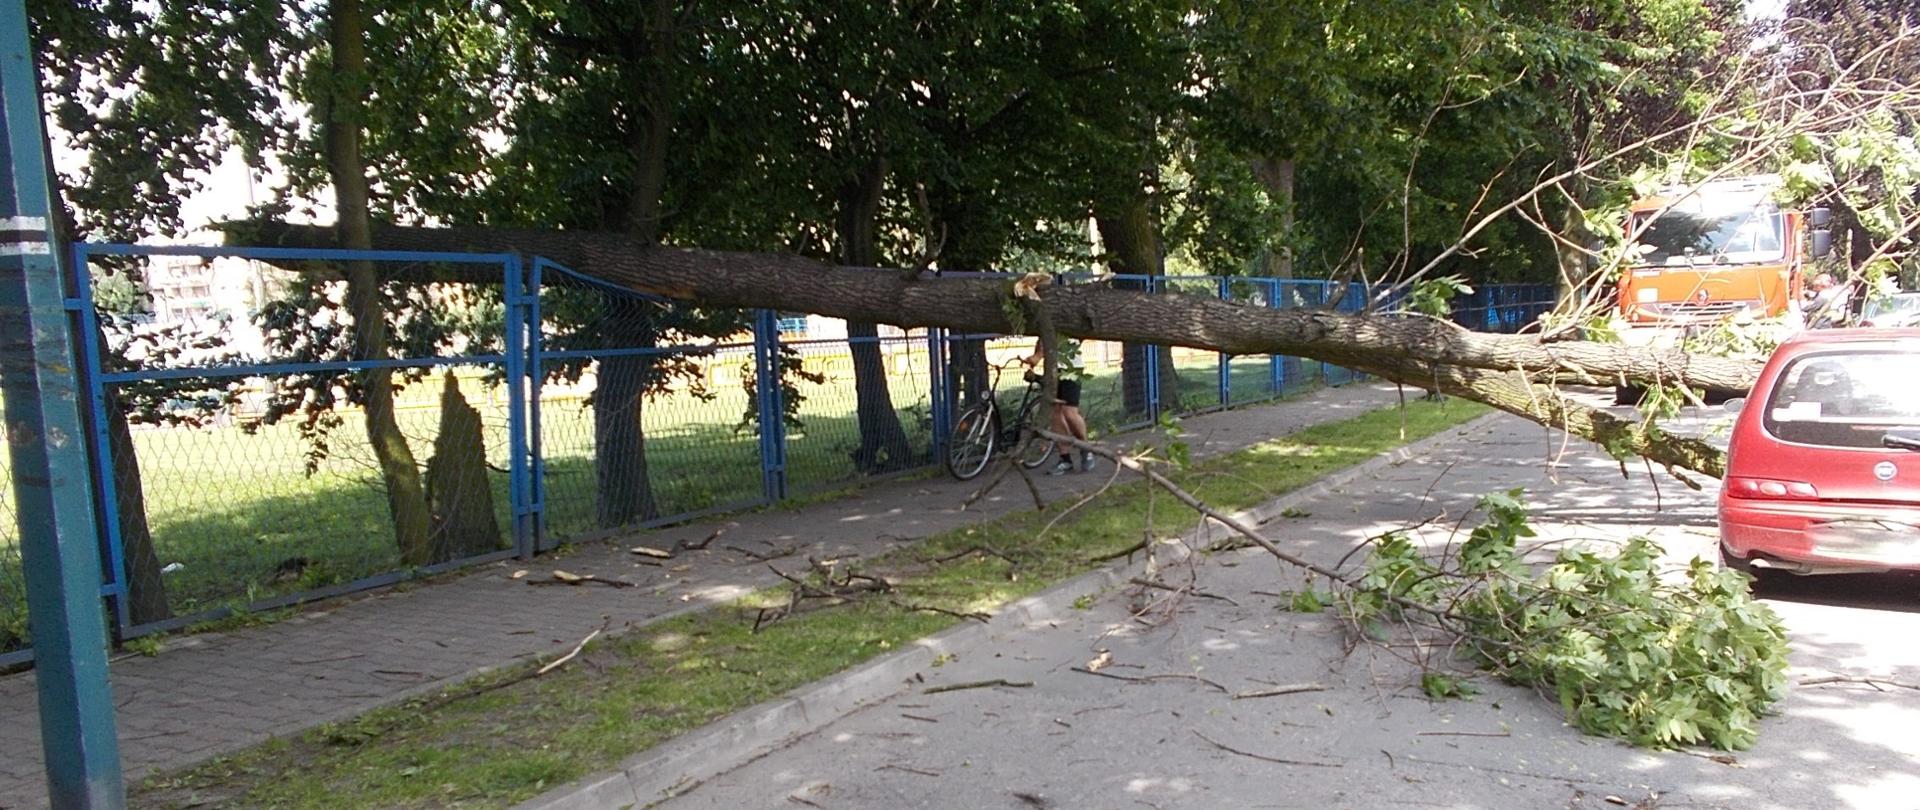 Zdjęcie przedstawia przewrócone drzewo na samochód osobowy